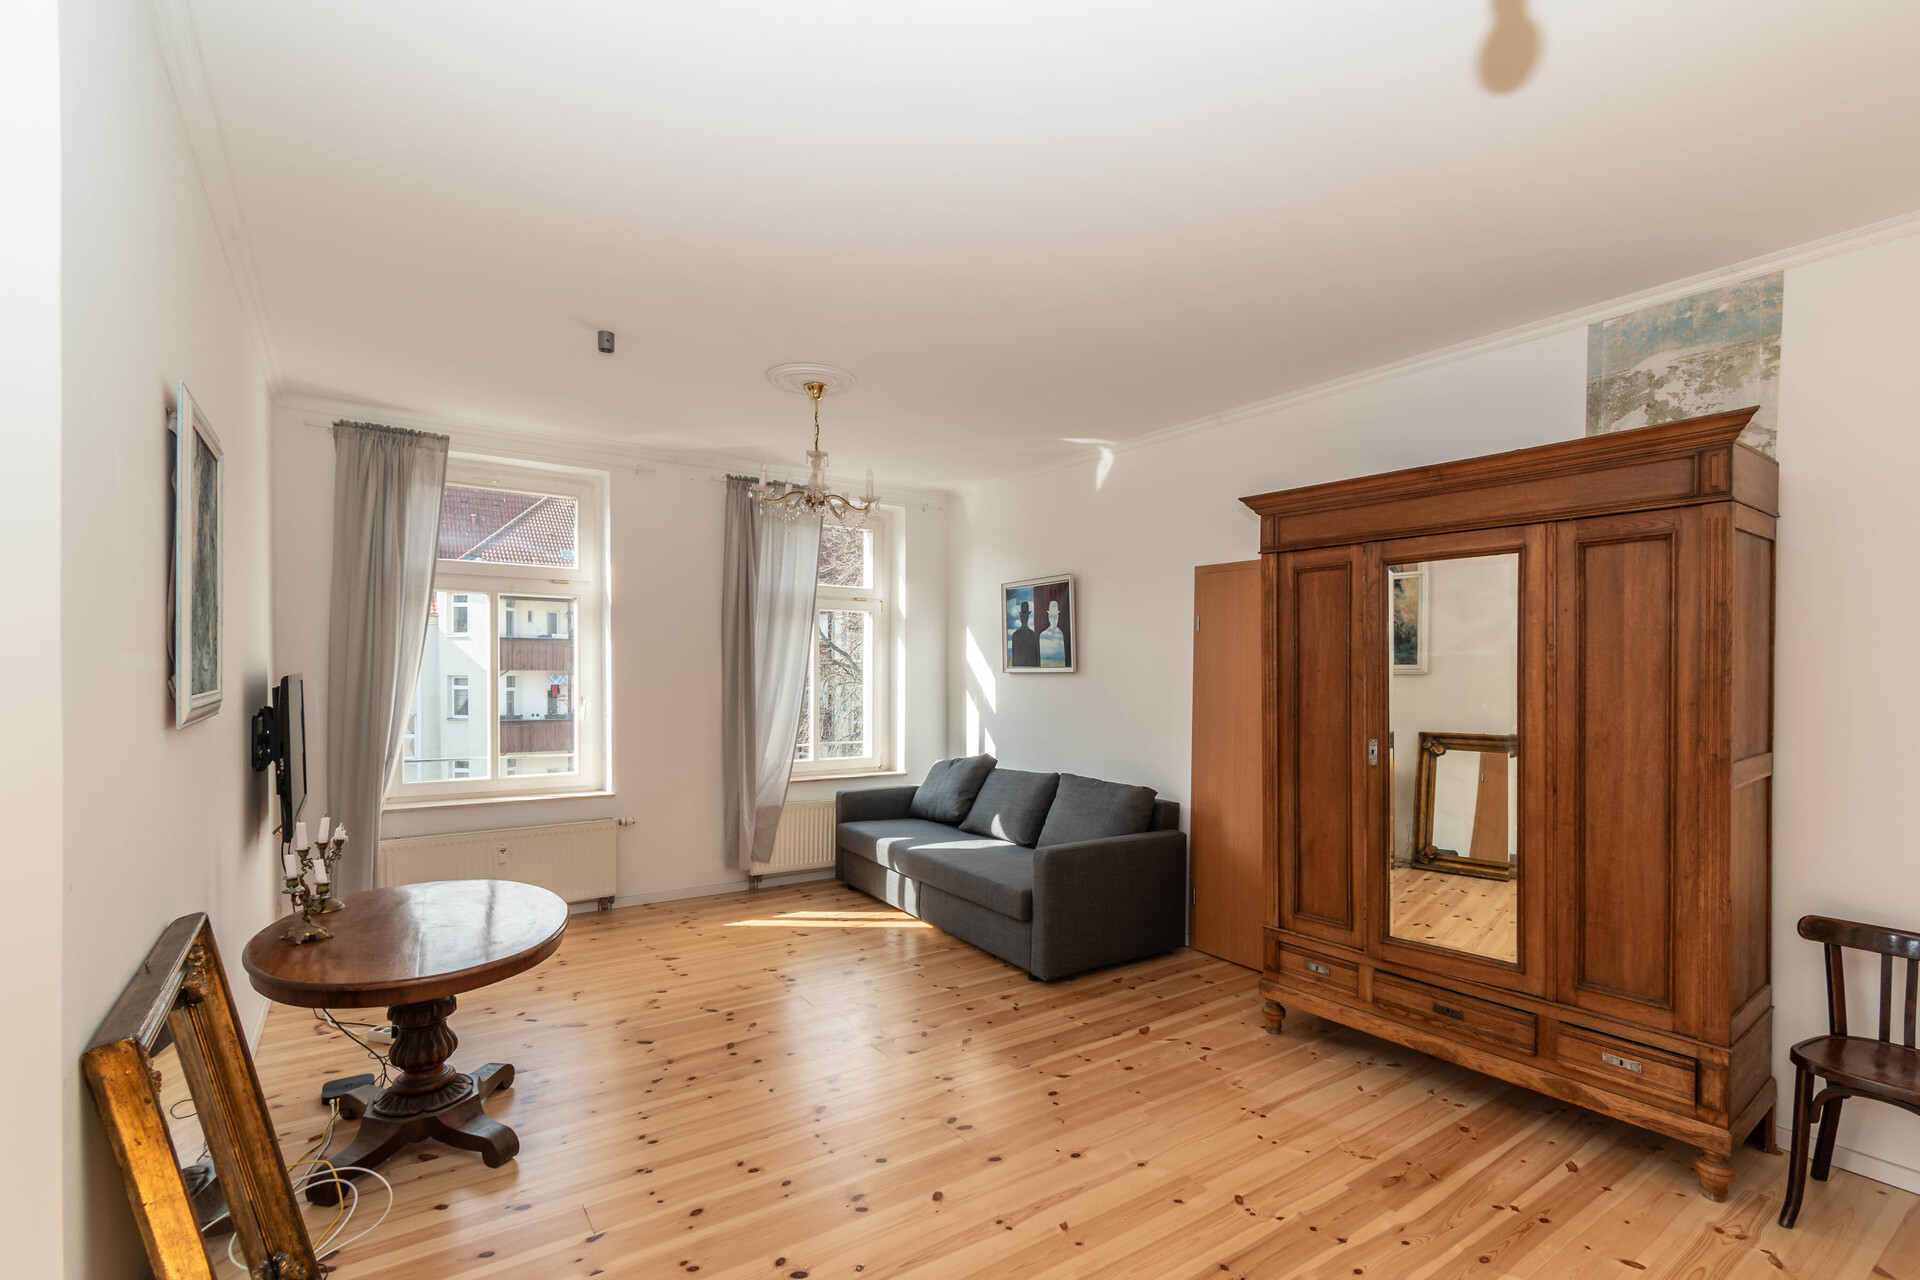 LUKRATIVE INVESTITION // Großzügiges Single-Apartment mit Balkon und EBK // frisch renoviert